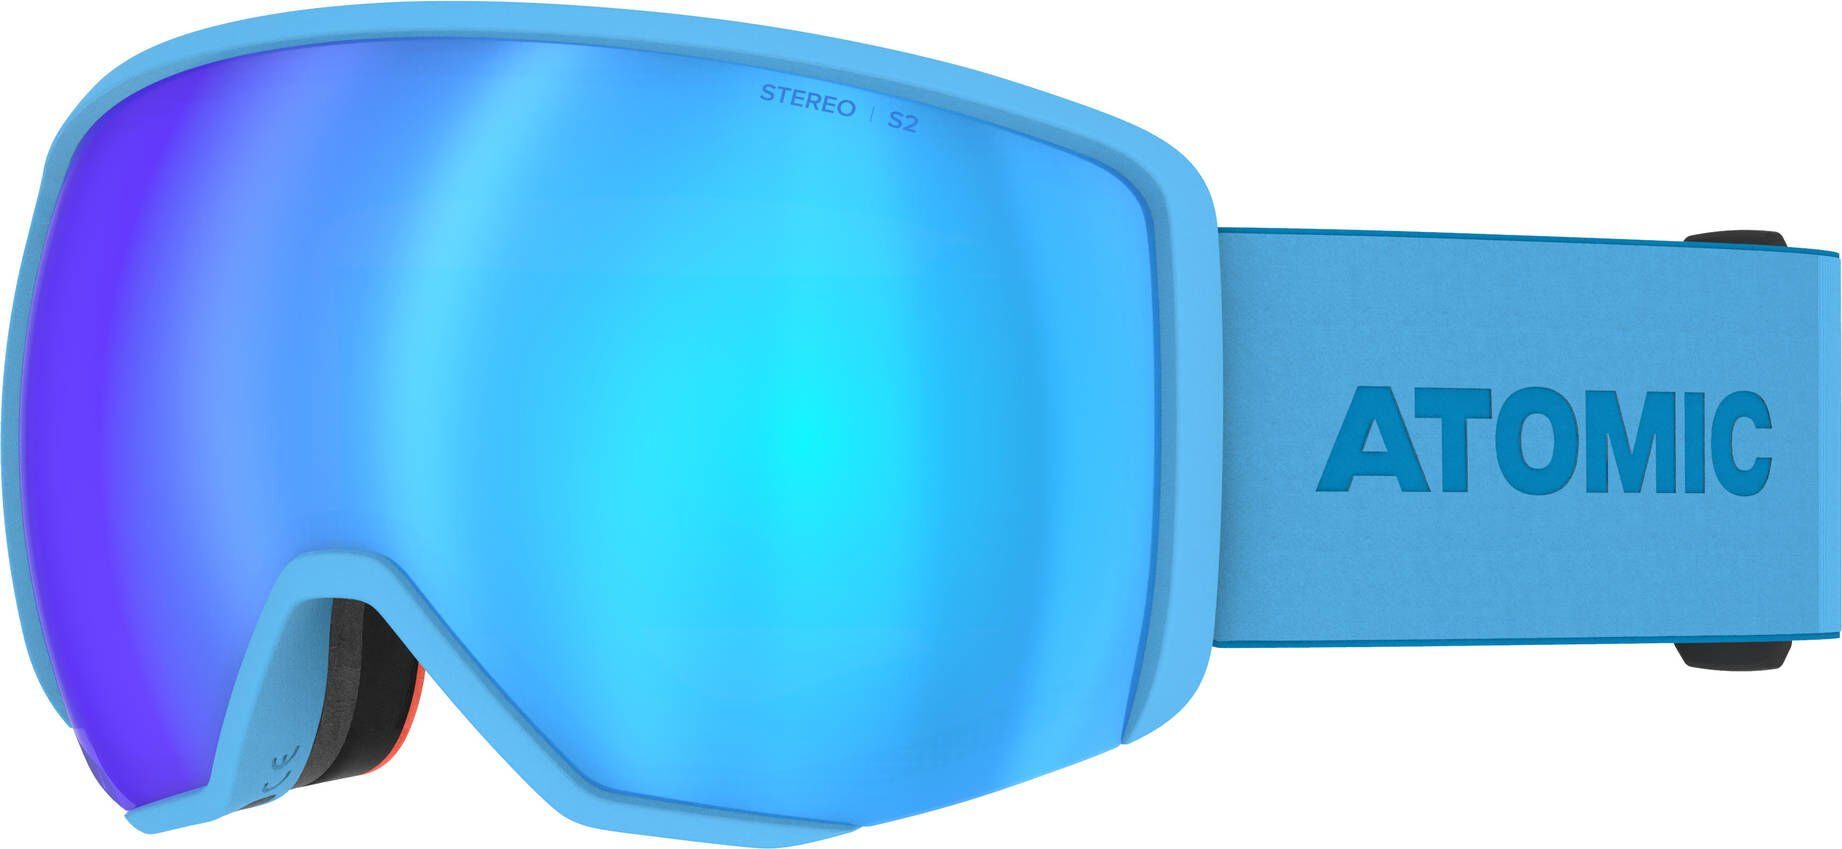 BLUE Skibrille Skibrille L STEREO REVENT Atomic